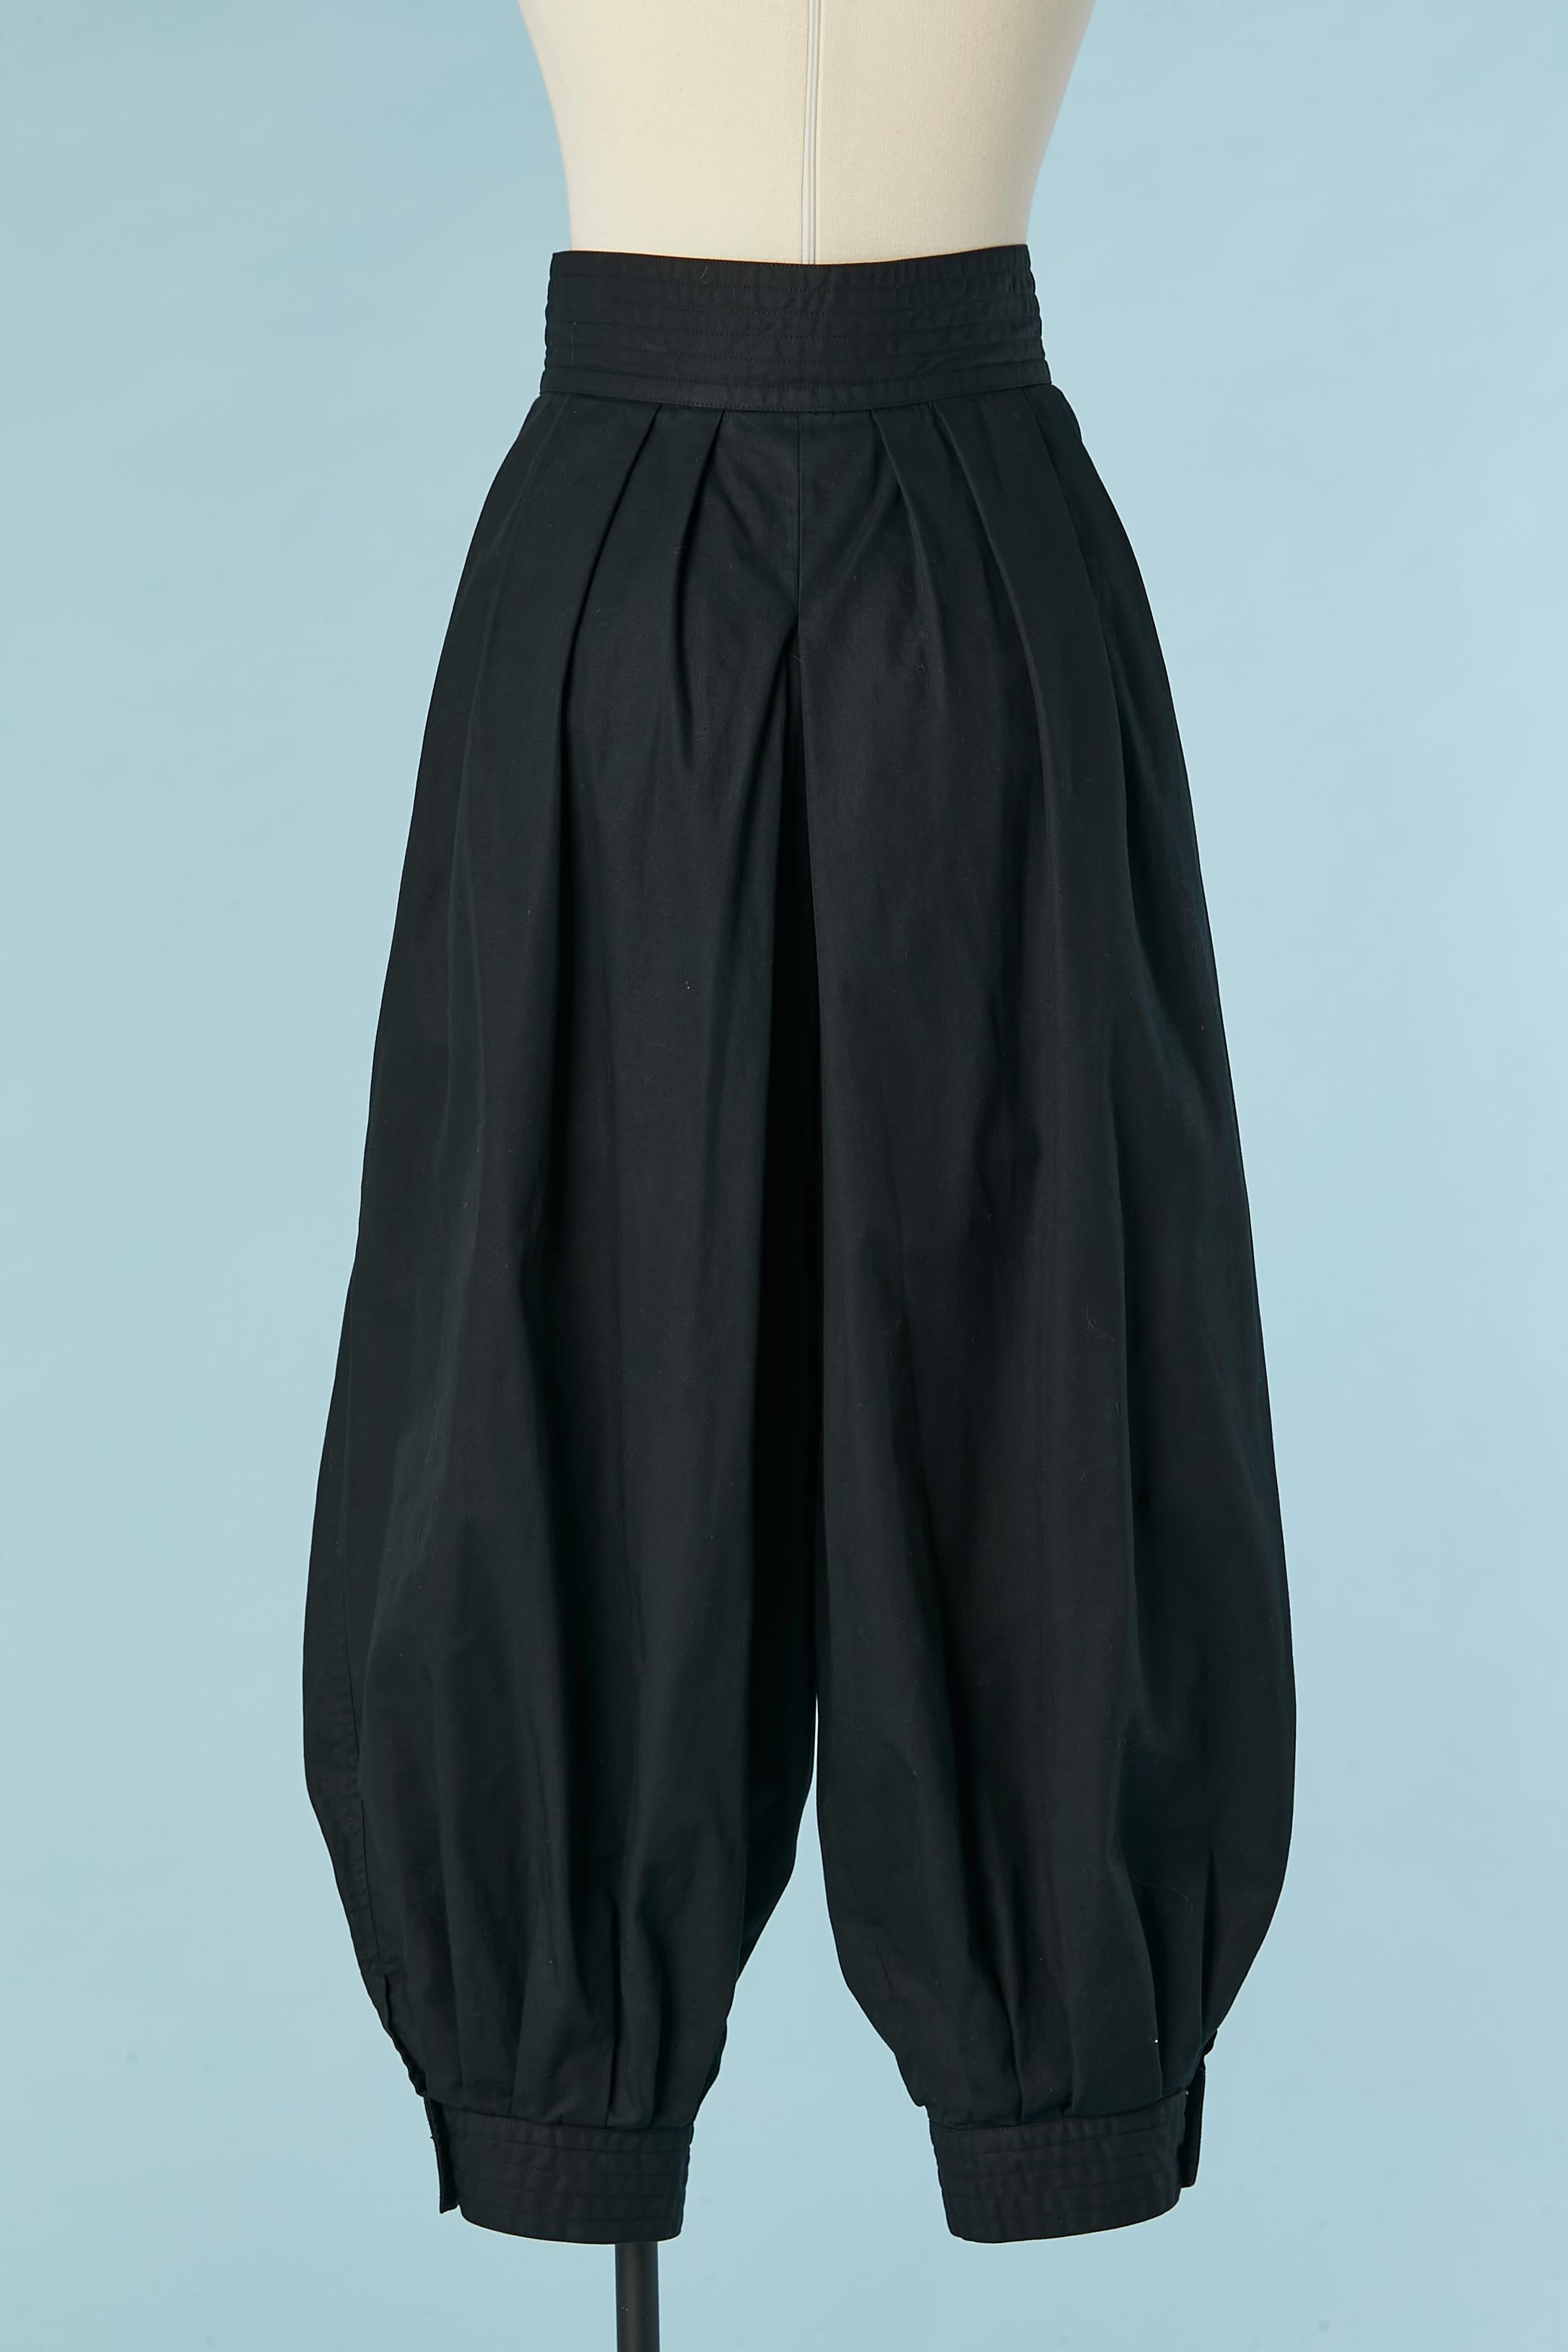 Women's Iconic sarouel trouser in black cotton Saint Laurent Rive Gauche 1976 For Sale